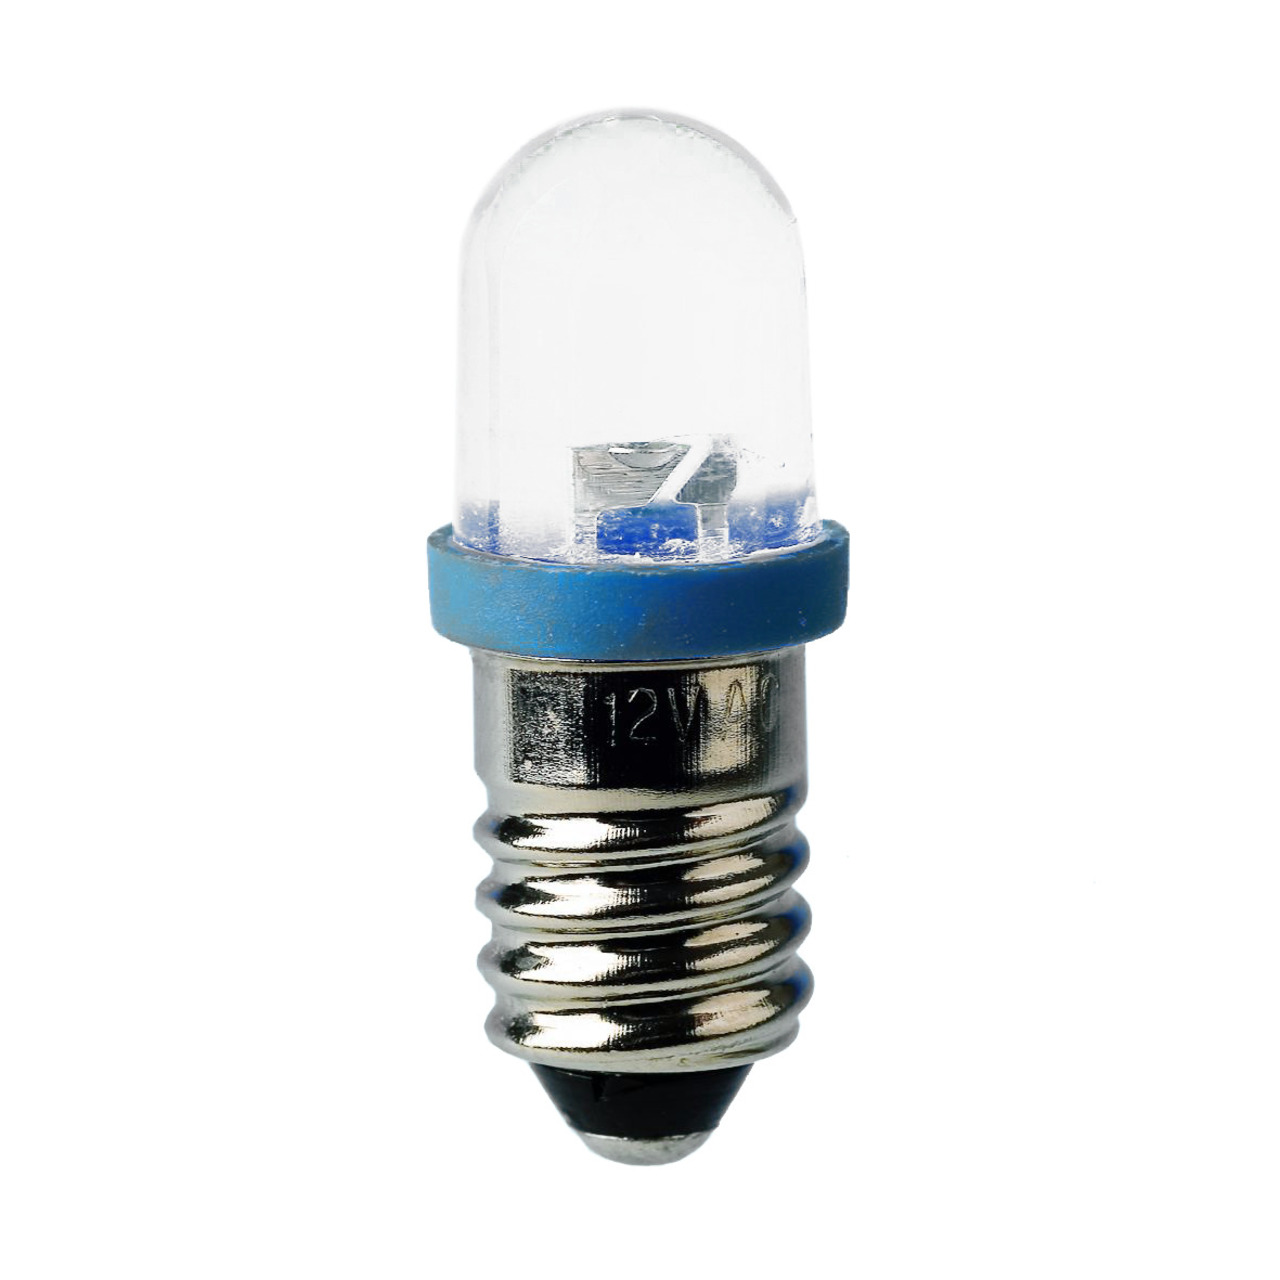 Barthelme LED-Lampe E10 mit Brückengleichrichter- 10 x 28 mm- 230 V- rot